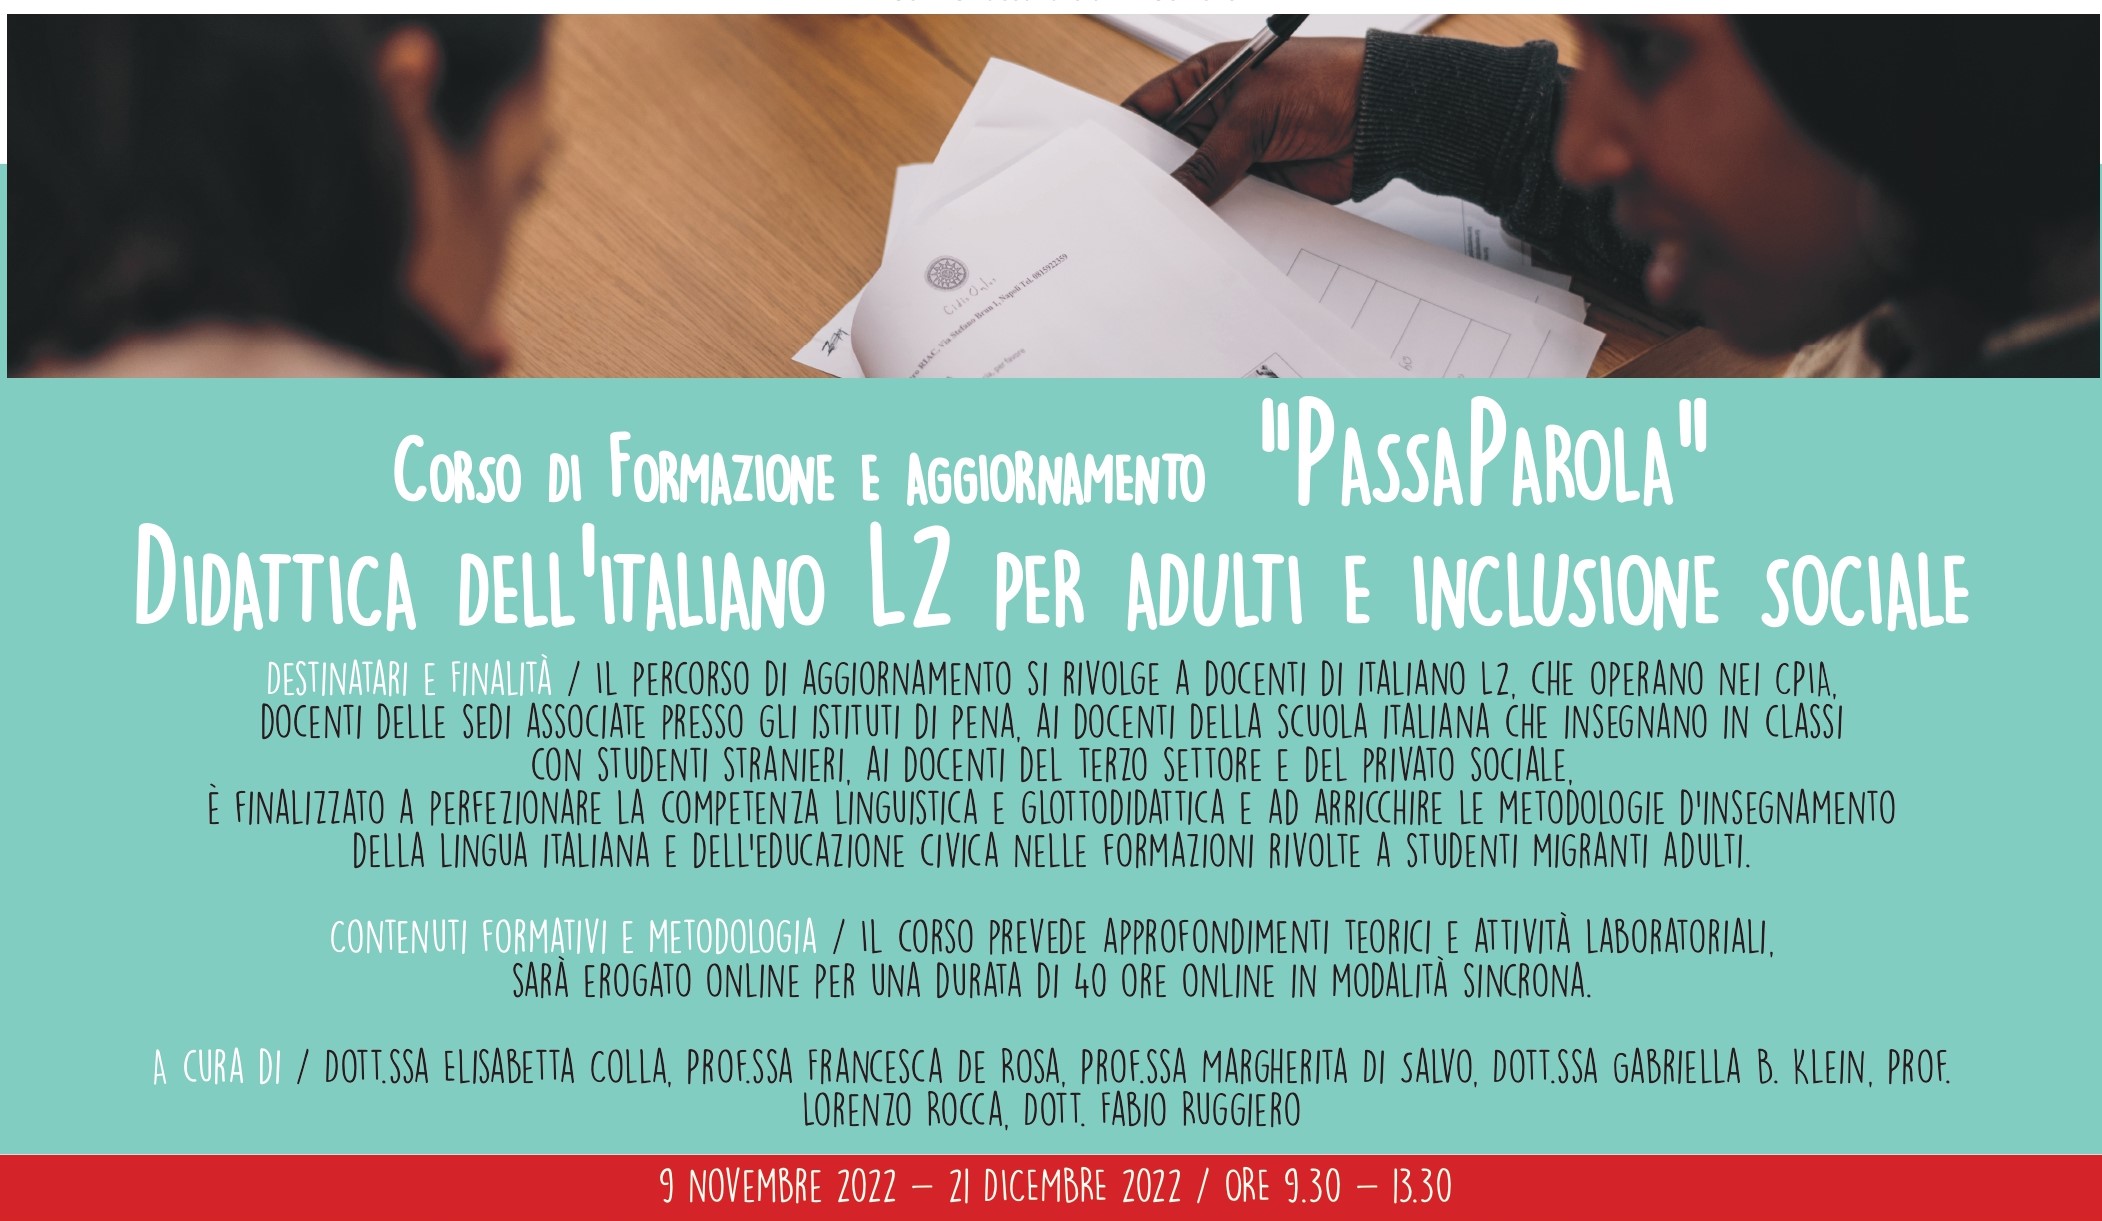 Didattica dell’Italiano L2: corso di aggiornamento di PassaParola